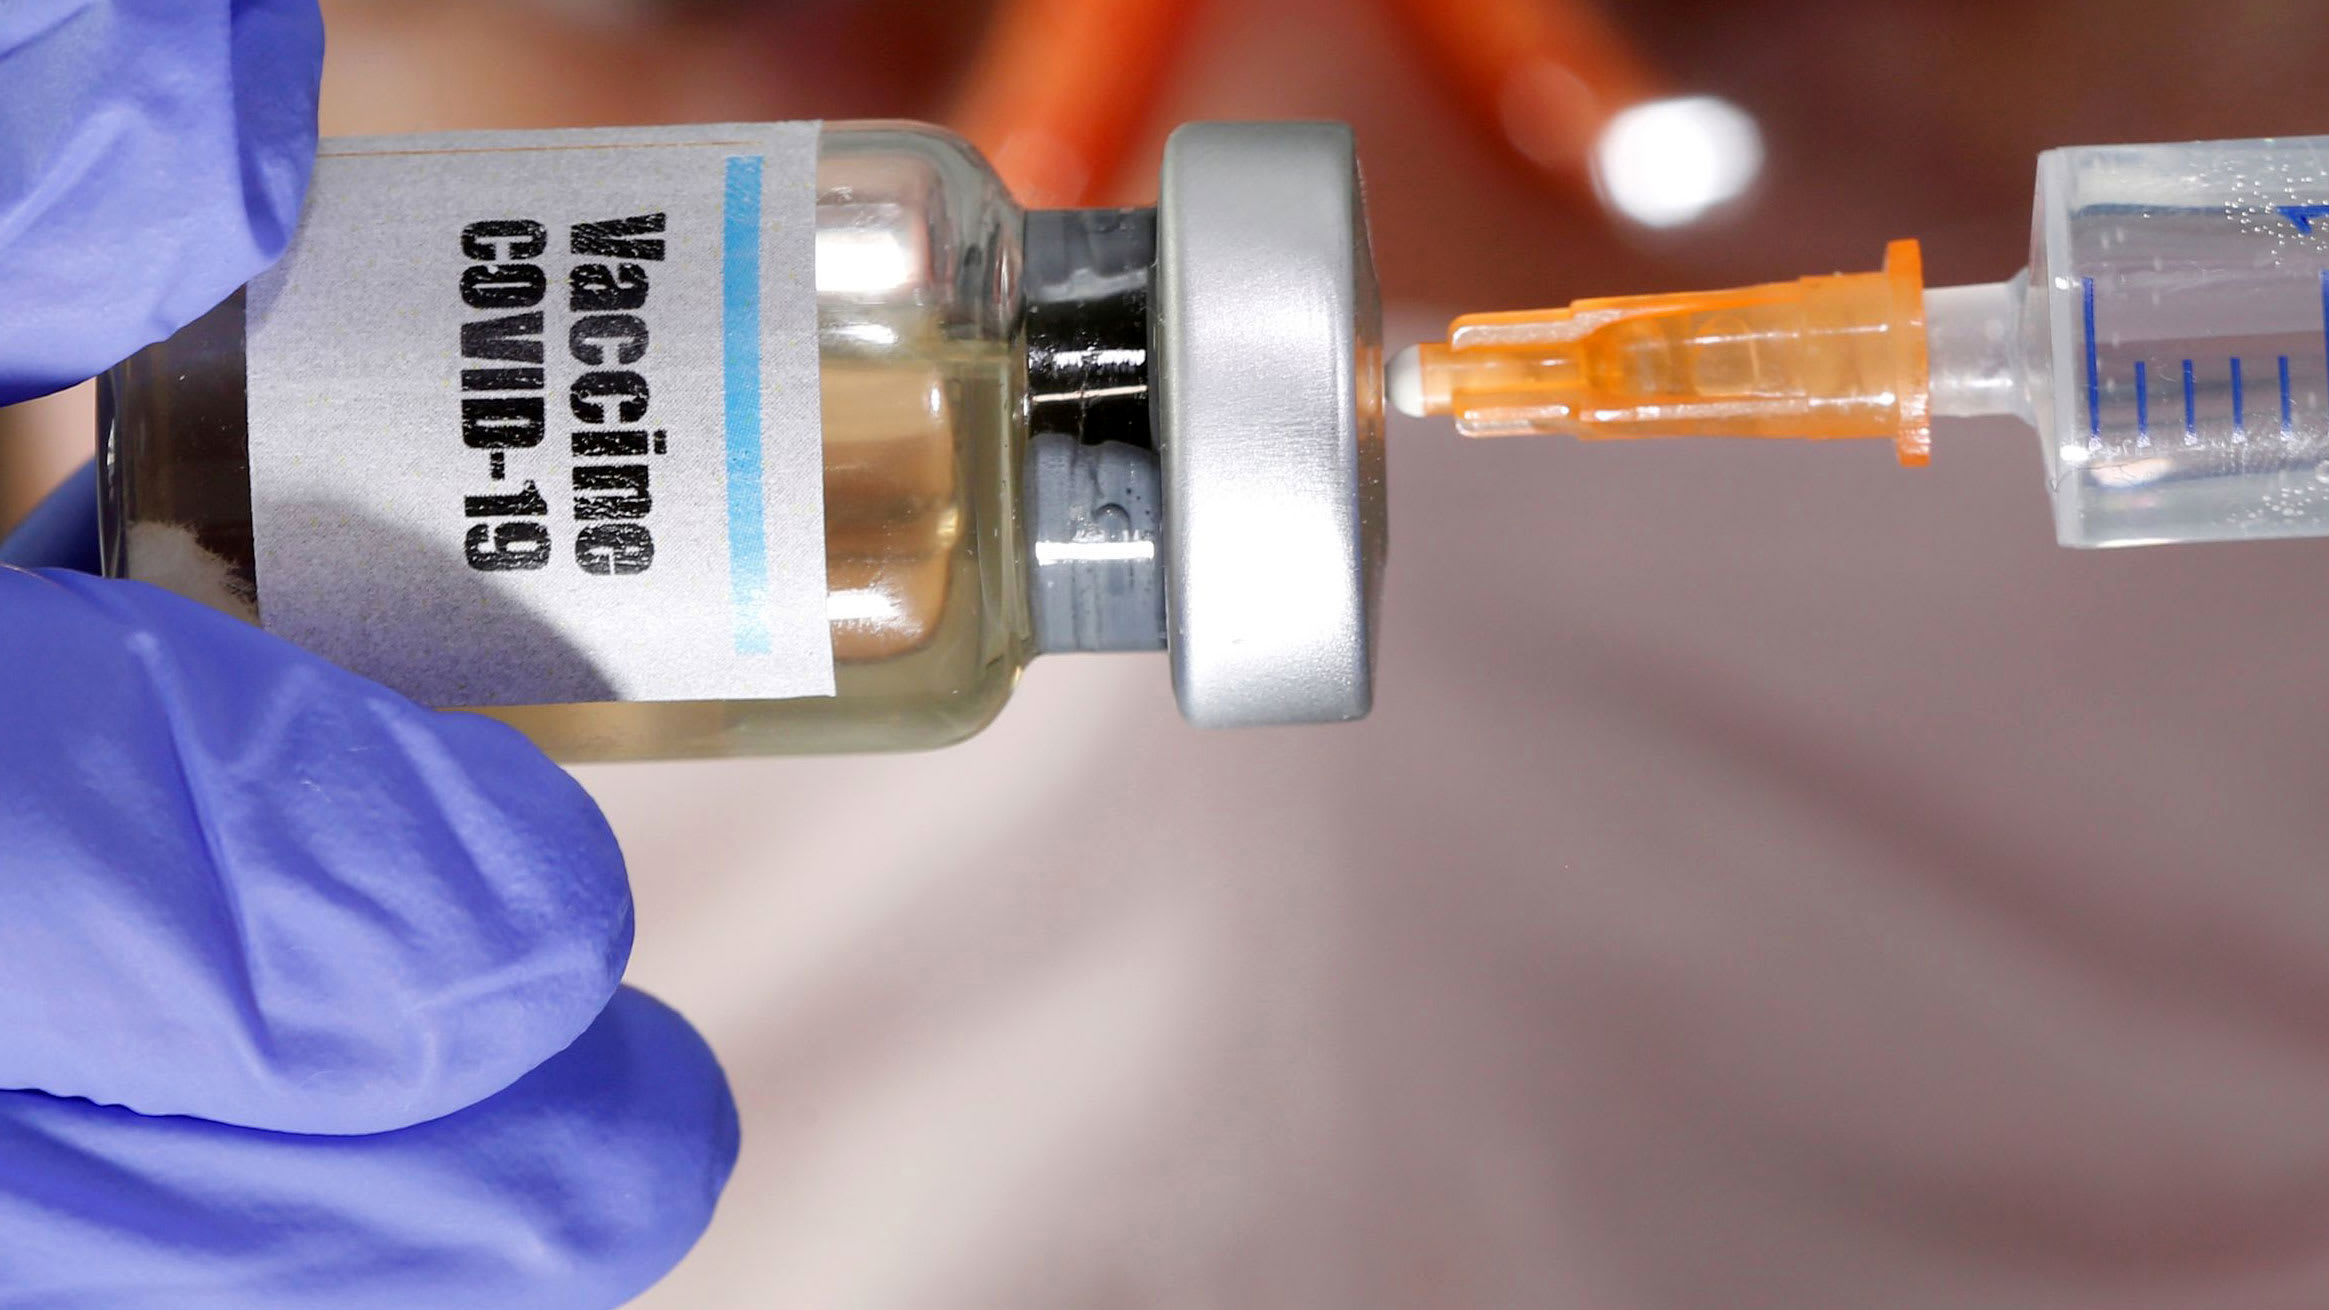 واکسن کرونا واقعا در روسیه ساخته شده است یا بلوف است؟